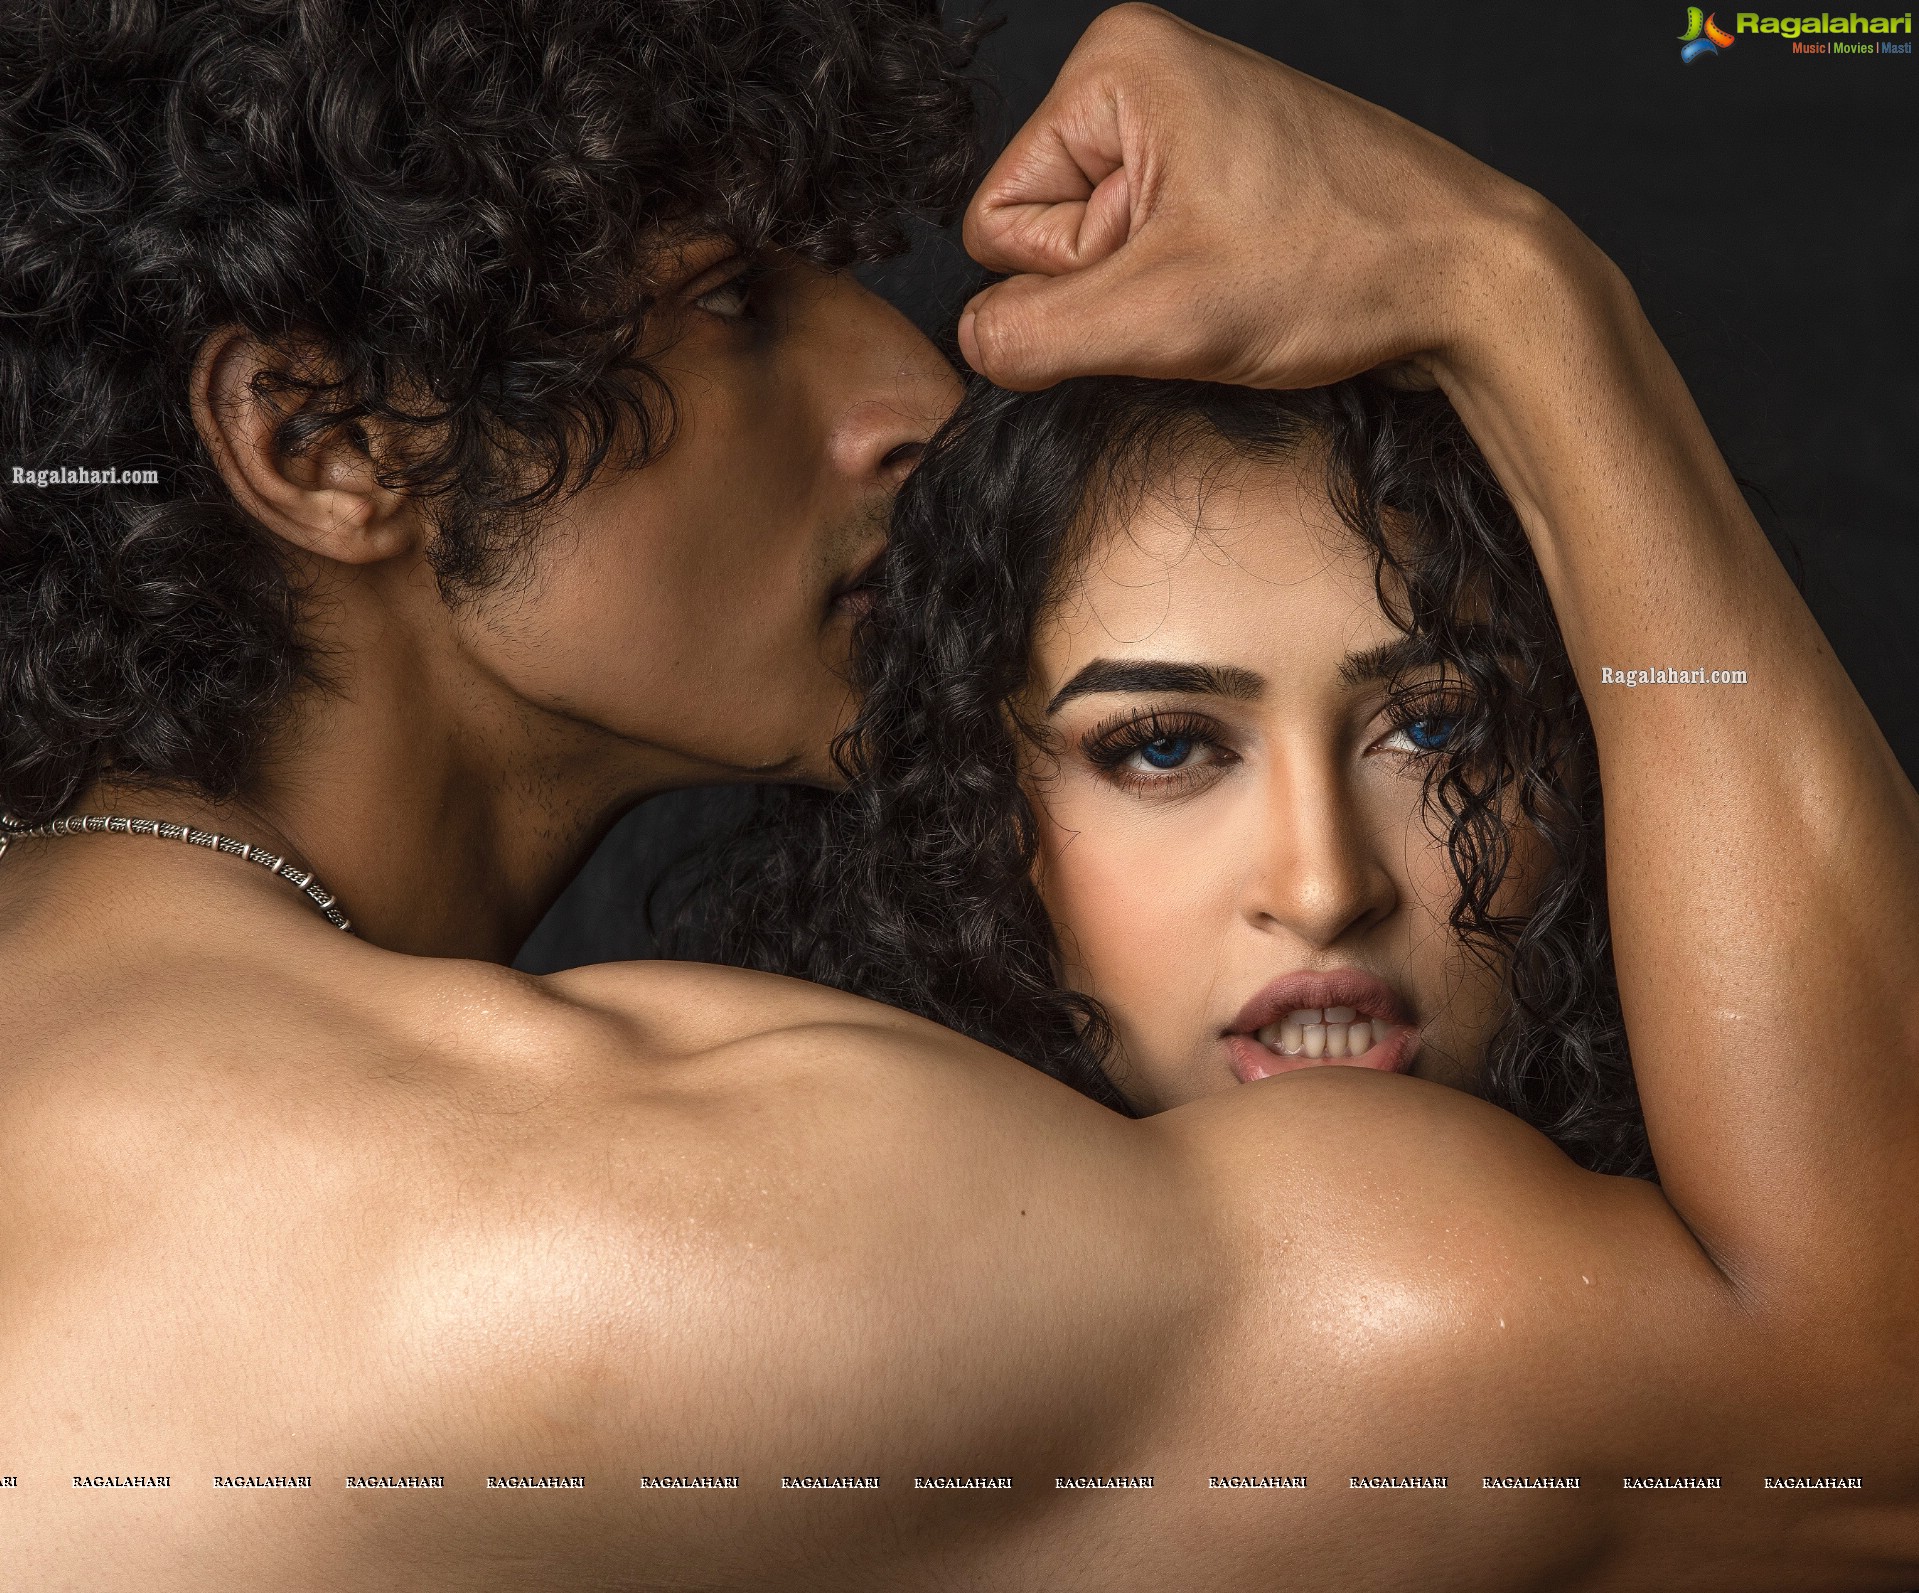 Apsara Rani Hot Stills From Thriller Movie - HD Gallery